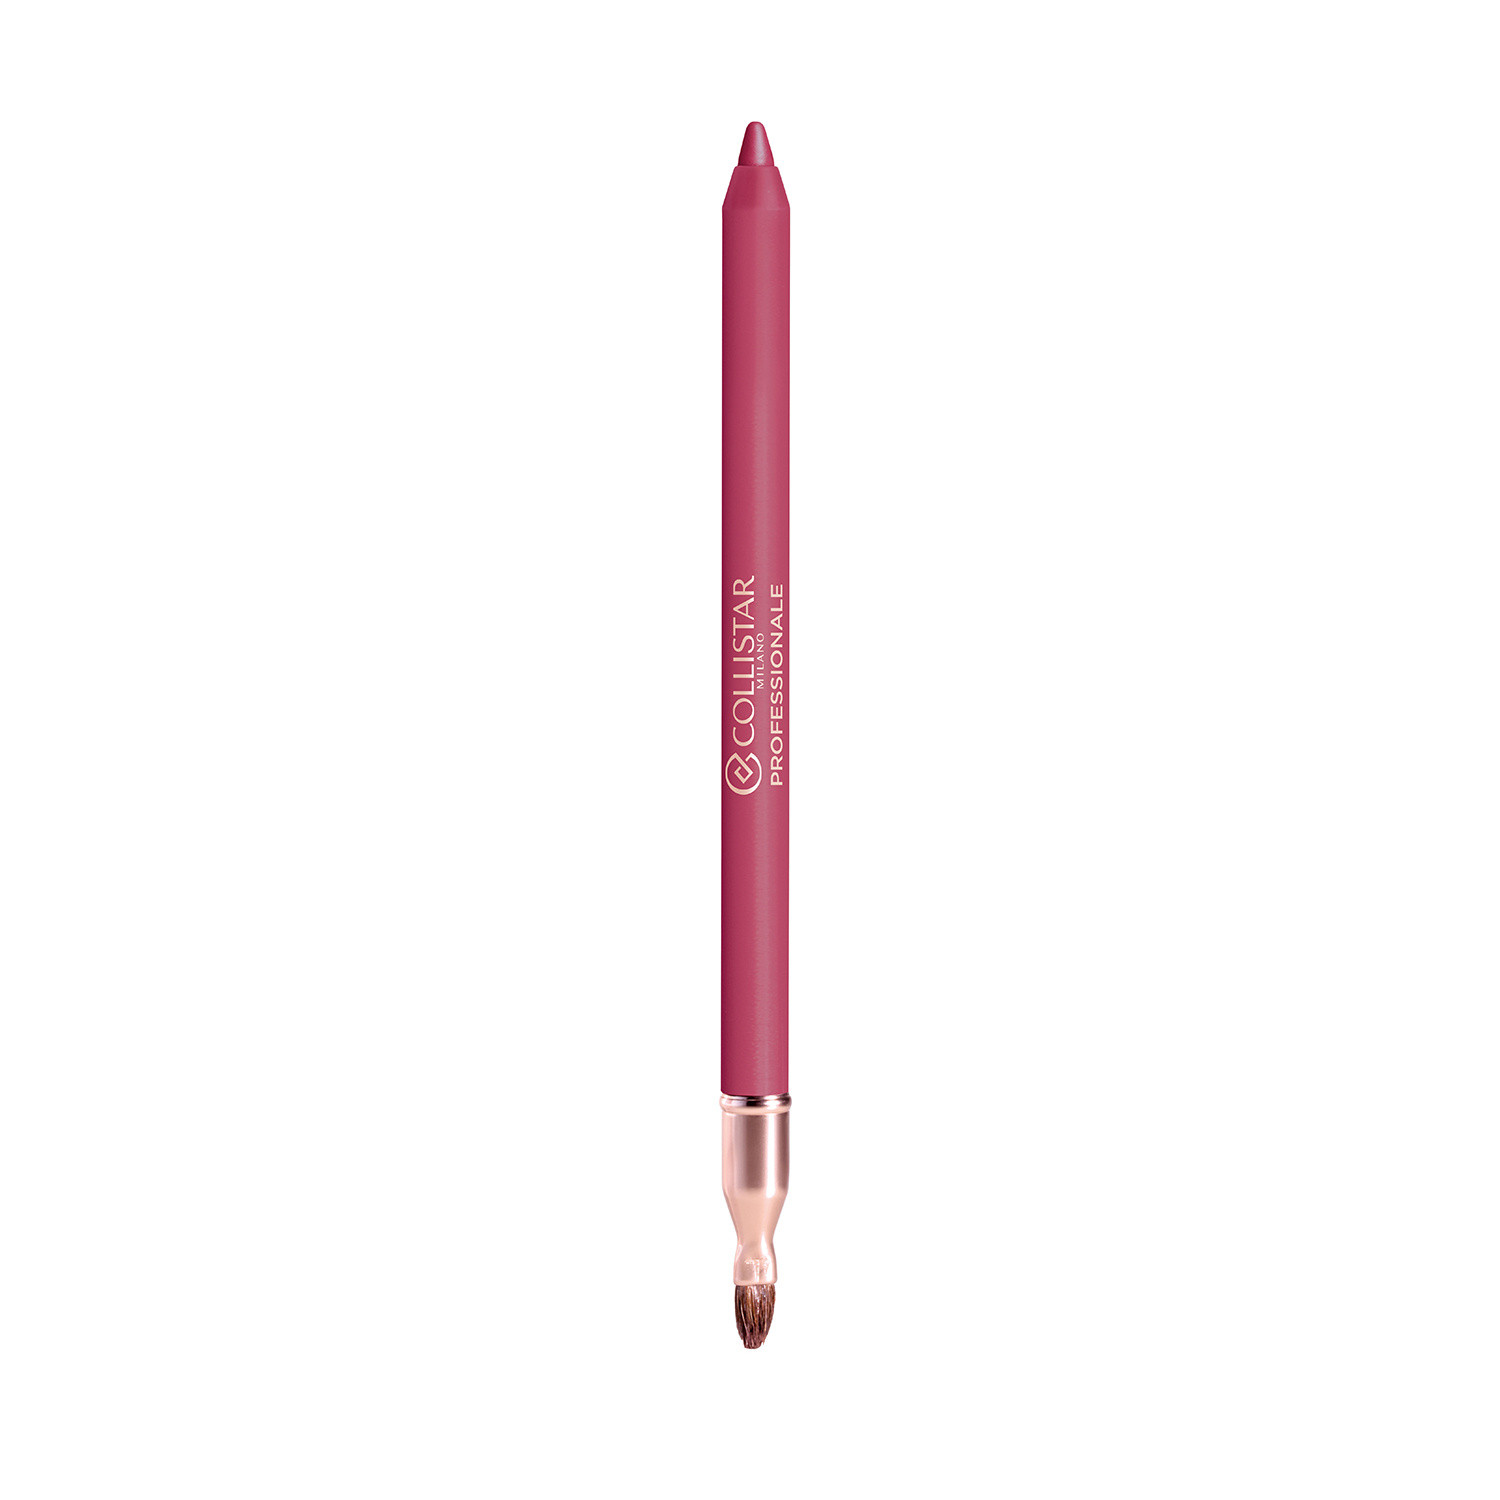 Collistar - Professionale matita labbra lunga durata - 113 Autumn Berry, Rosa fenicottero, large image number 1